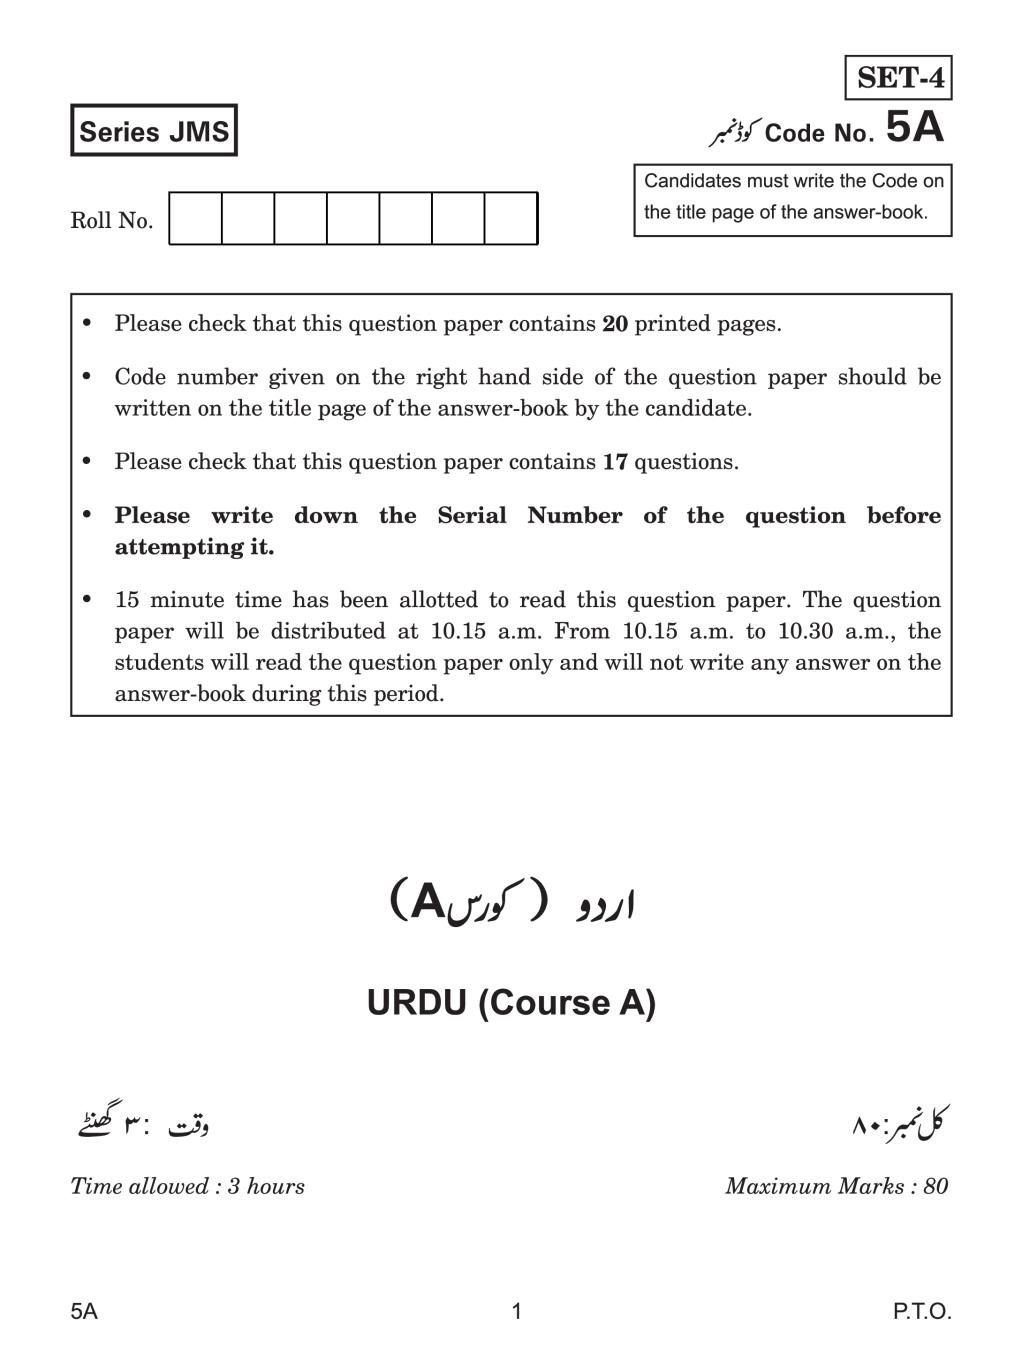 CBSE Class 10 Urdu Course A Question Paper 2019 - Page 1